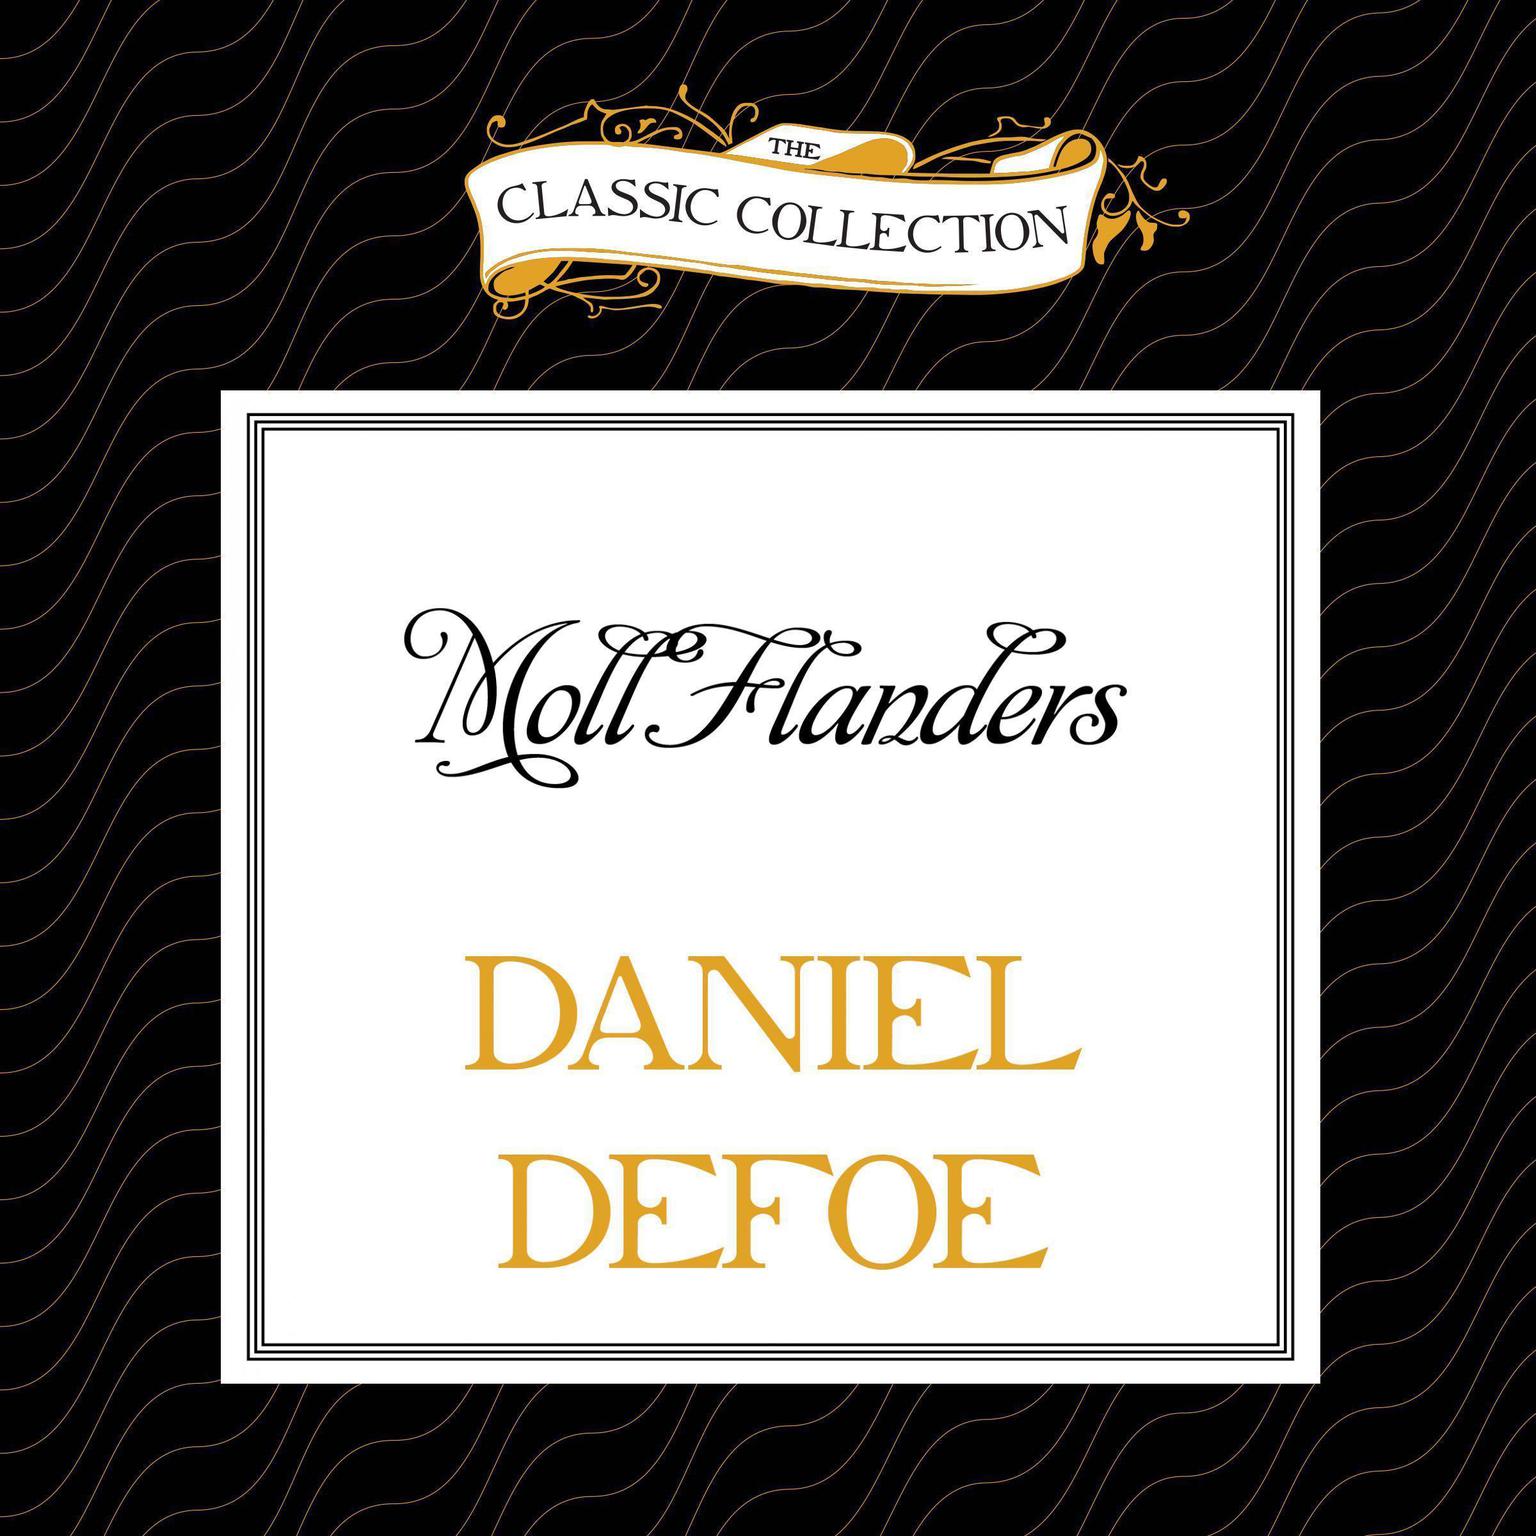 Moll Flanders Audiobook, by Daniel Defoe